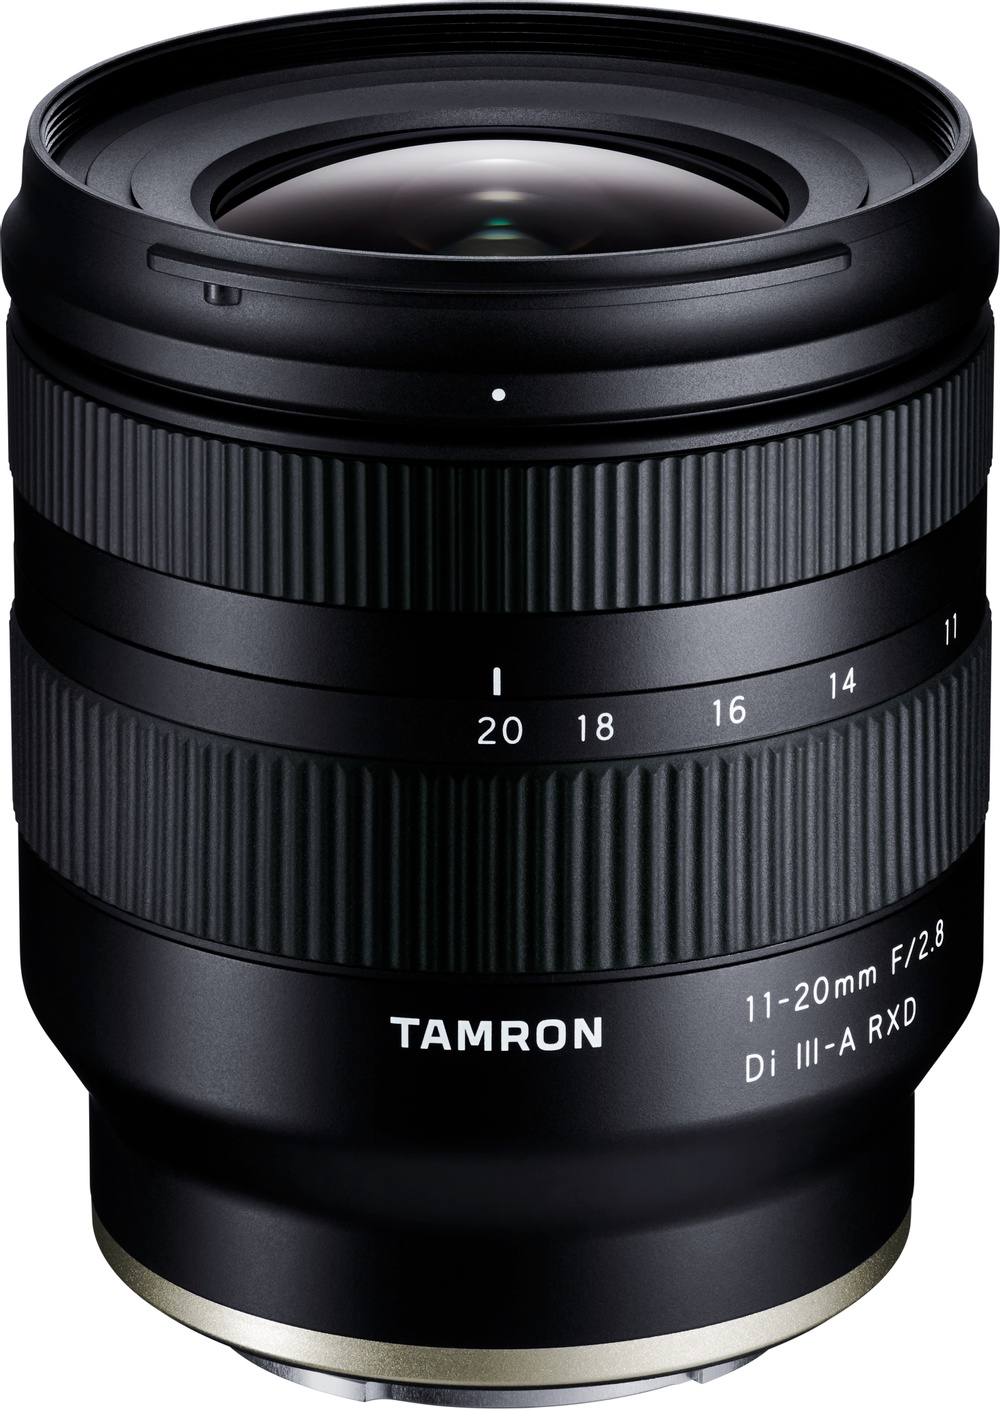 Tamron 11-20mm f2.8 Di III-A RXD_03_116500.jpg